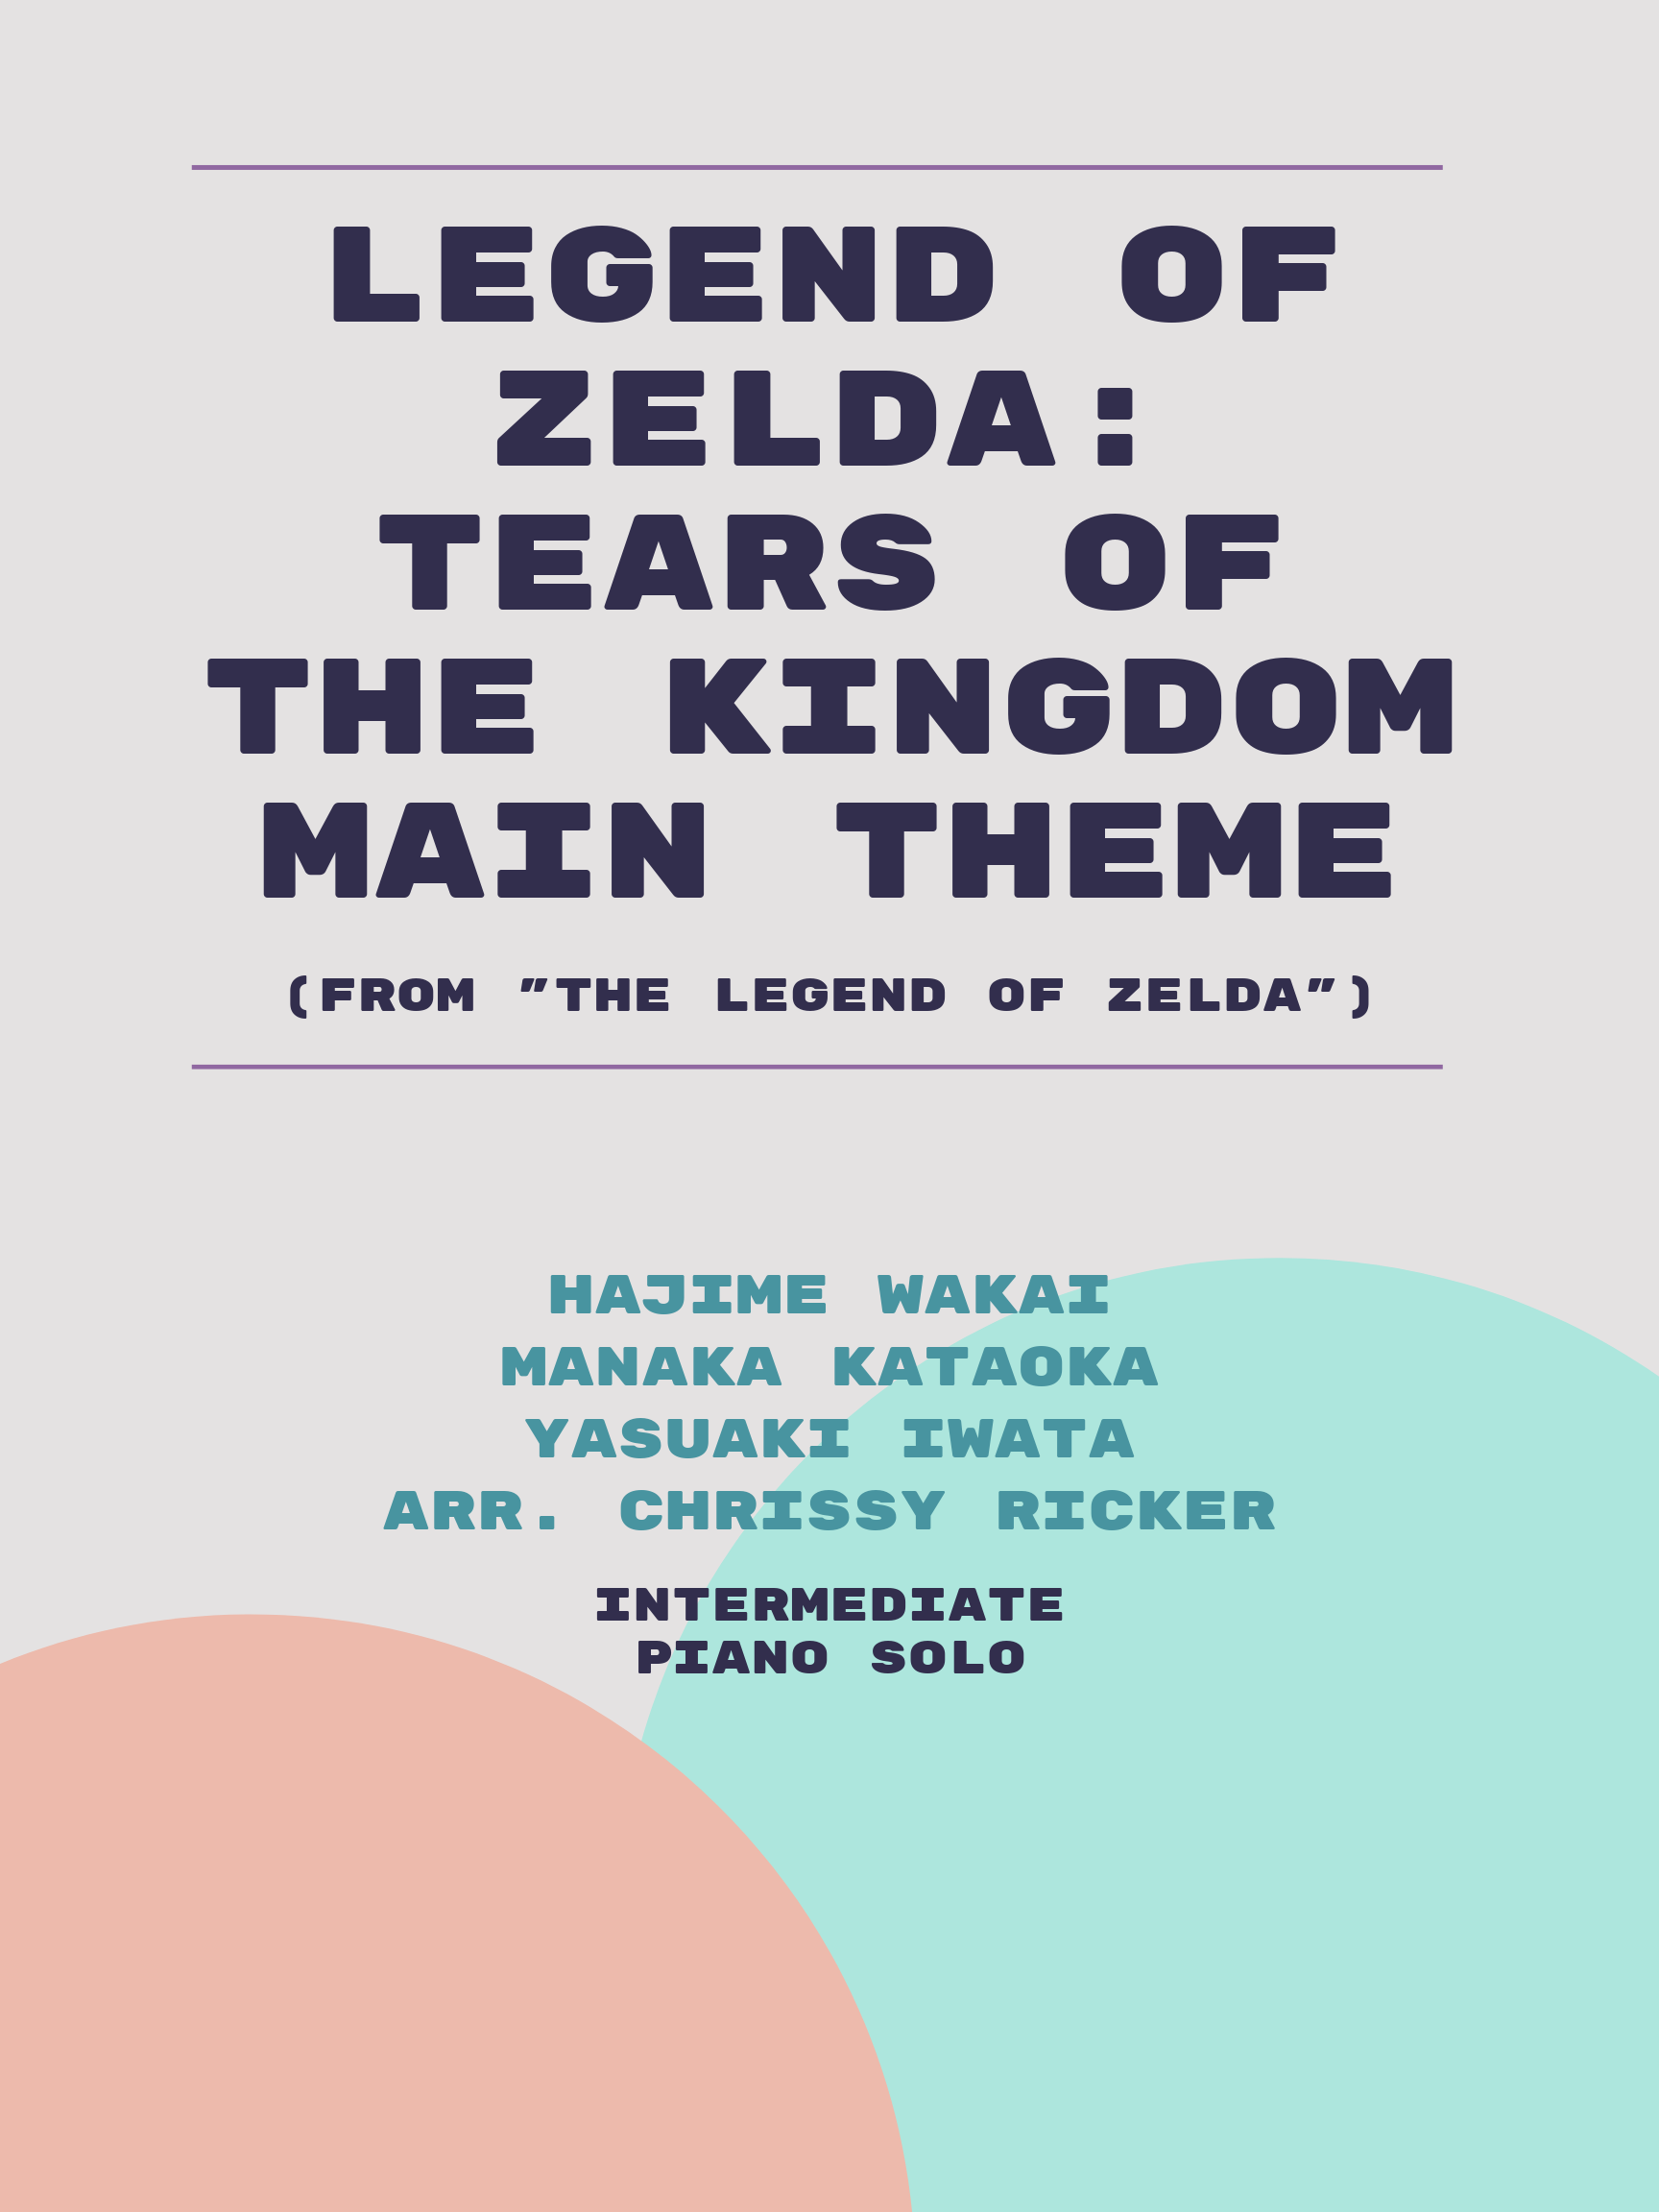 Legend of Zelda: Tears of the Kingdom Main Theme by Hajime Wakai, Manaka Kataoka, Yasuaki Iwata